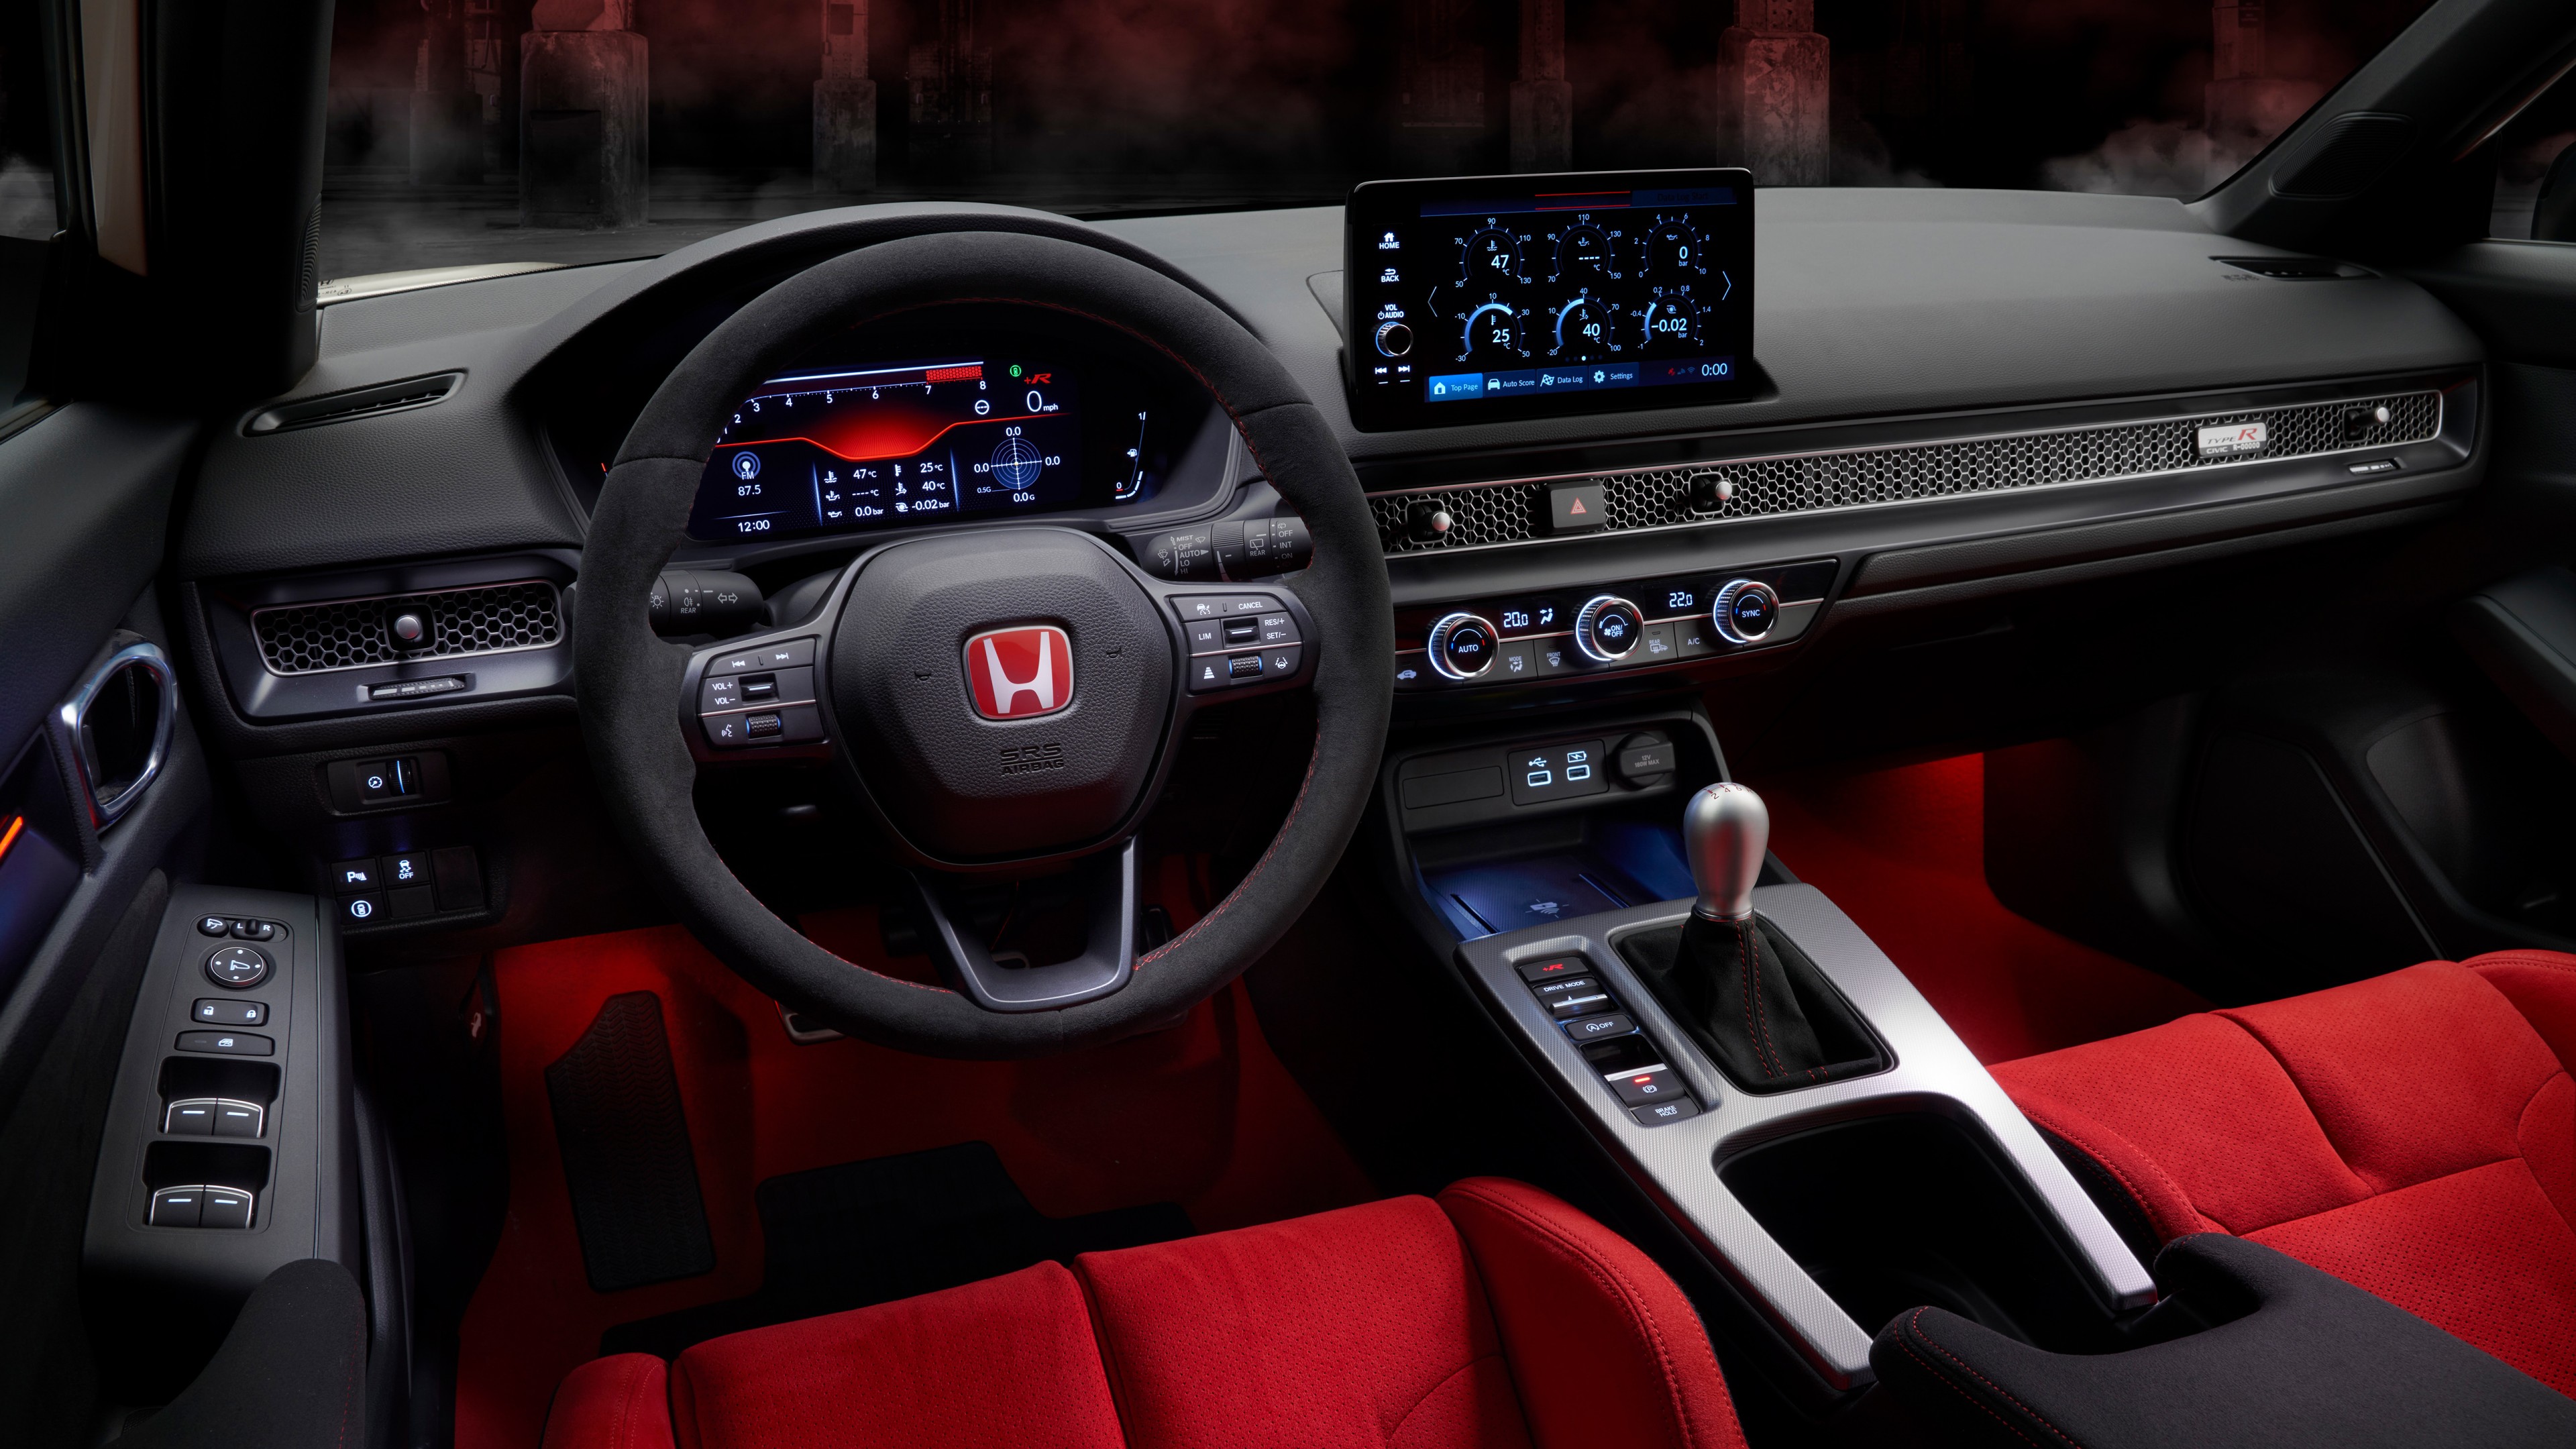 Honda Civic Type R 2022 Interior 5K Wallpaper HD Car Wallpapers 22204